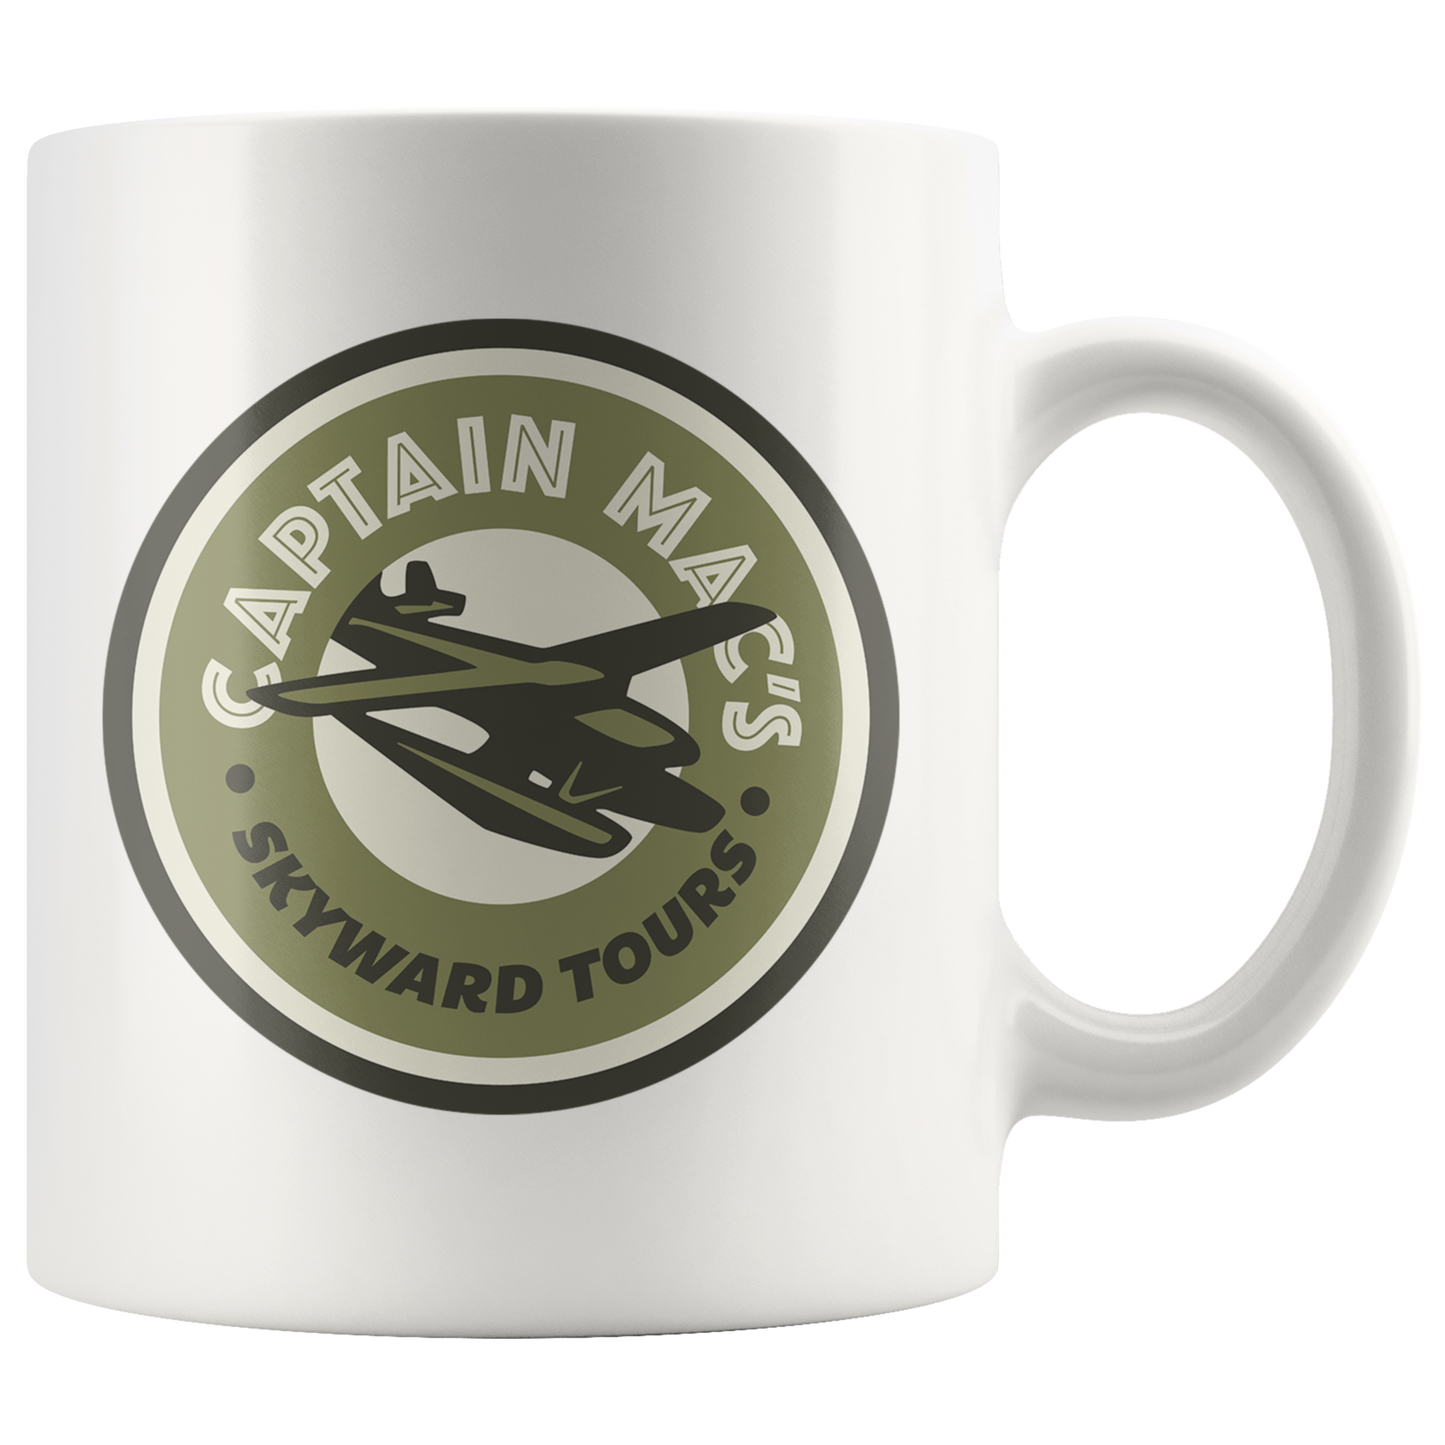 Skyward Tours Mug - White